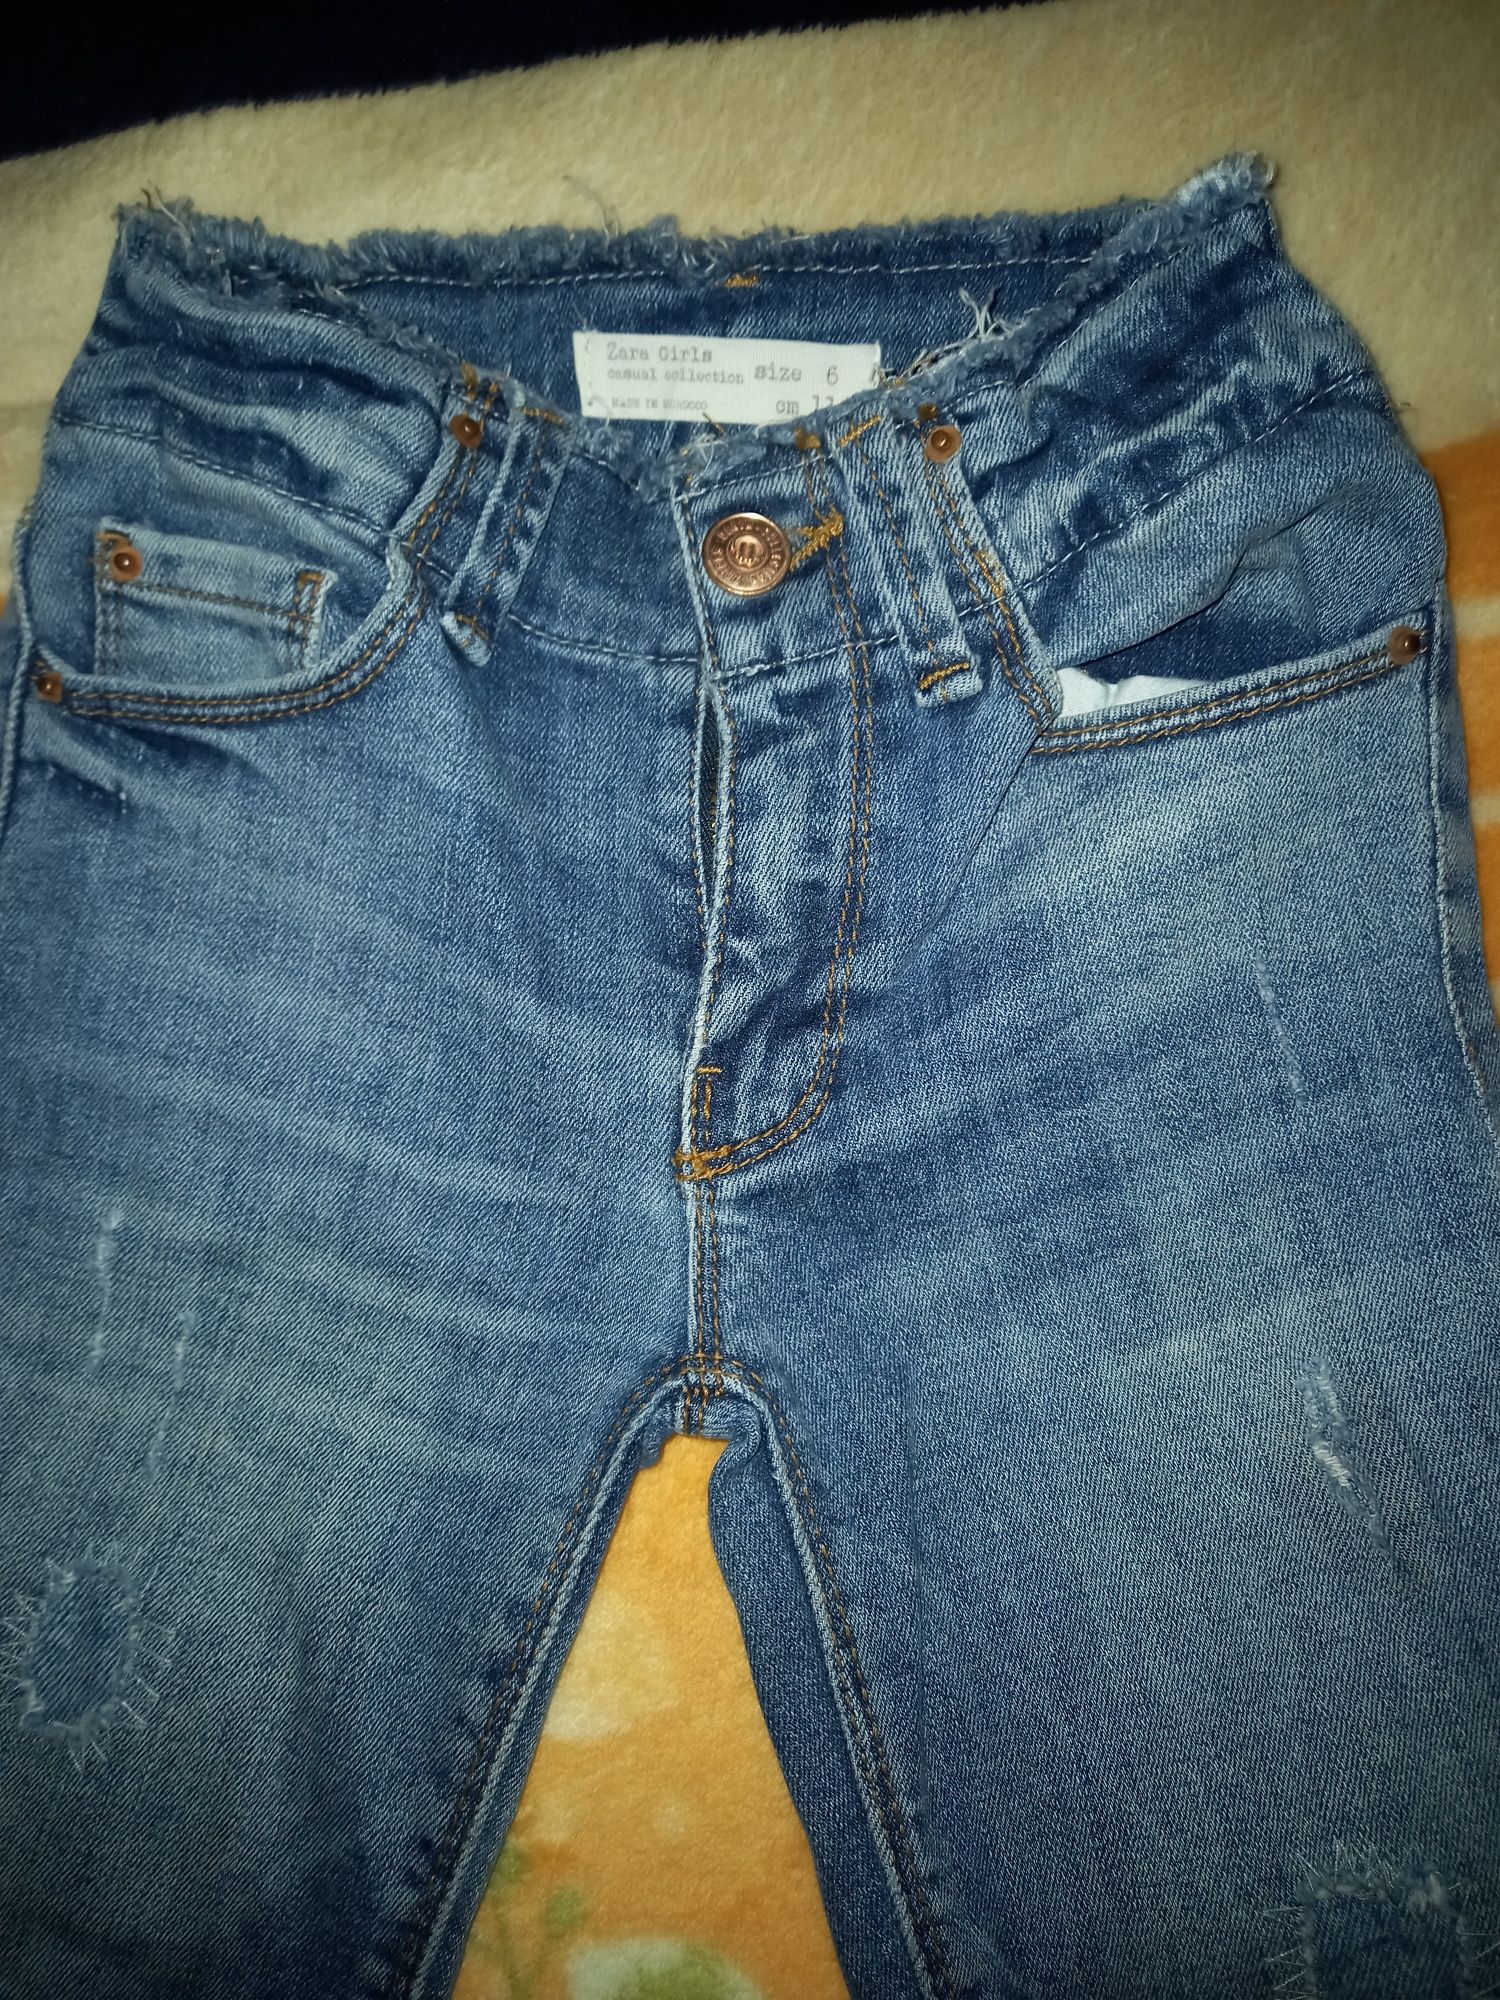 Фирменные стильные джинсы на девочку рост 110/116 в отличном состоянии